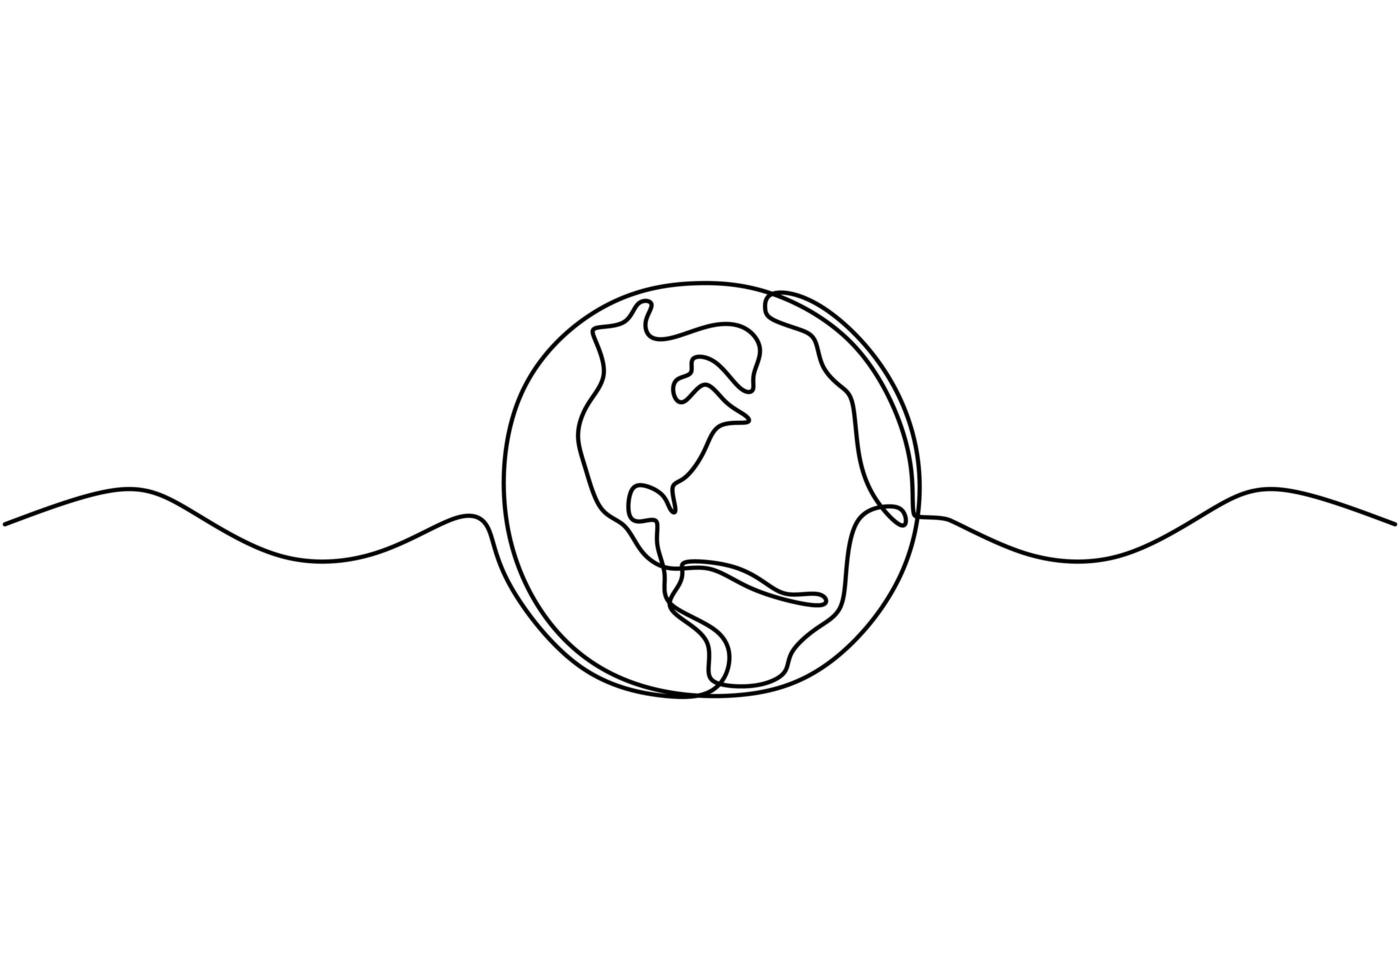 globo terrestre un disegno a tratteggio della mappa del mondo illustrazione vettoriale design minimalista del minimalismo isolato su sfondo bianco.